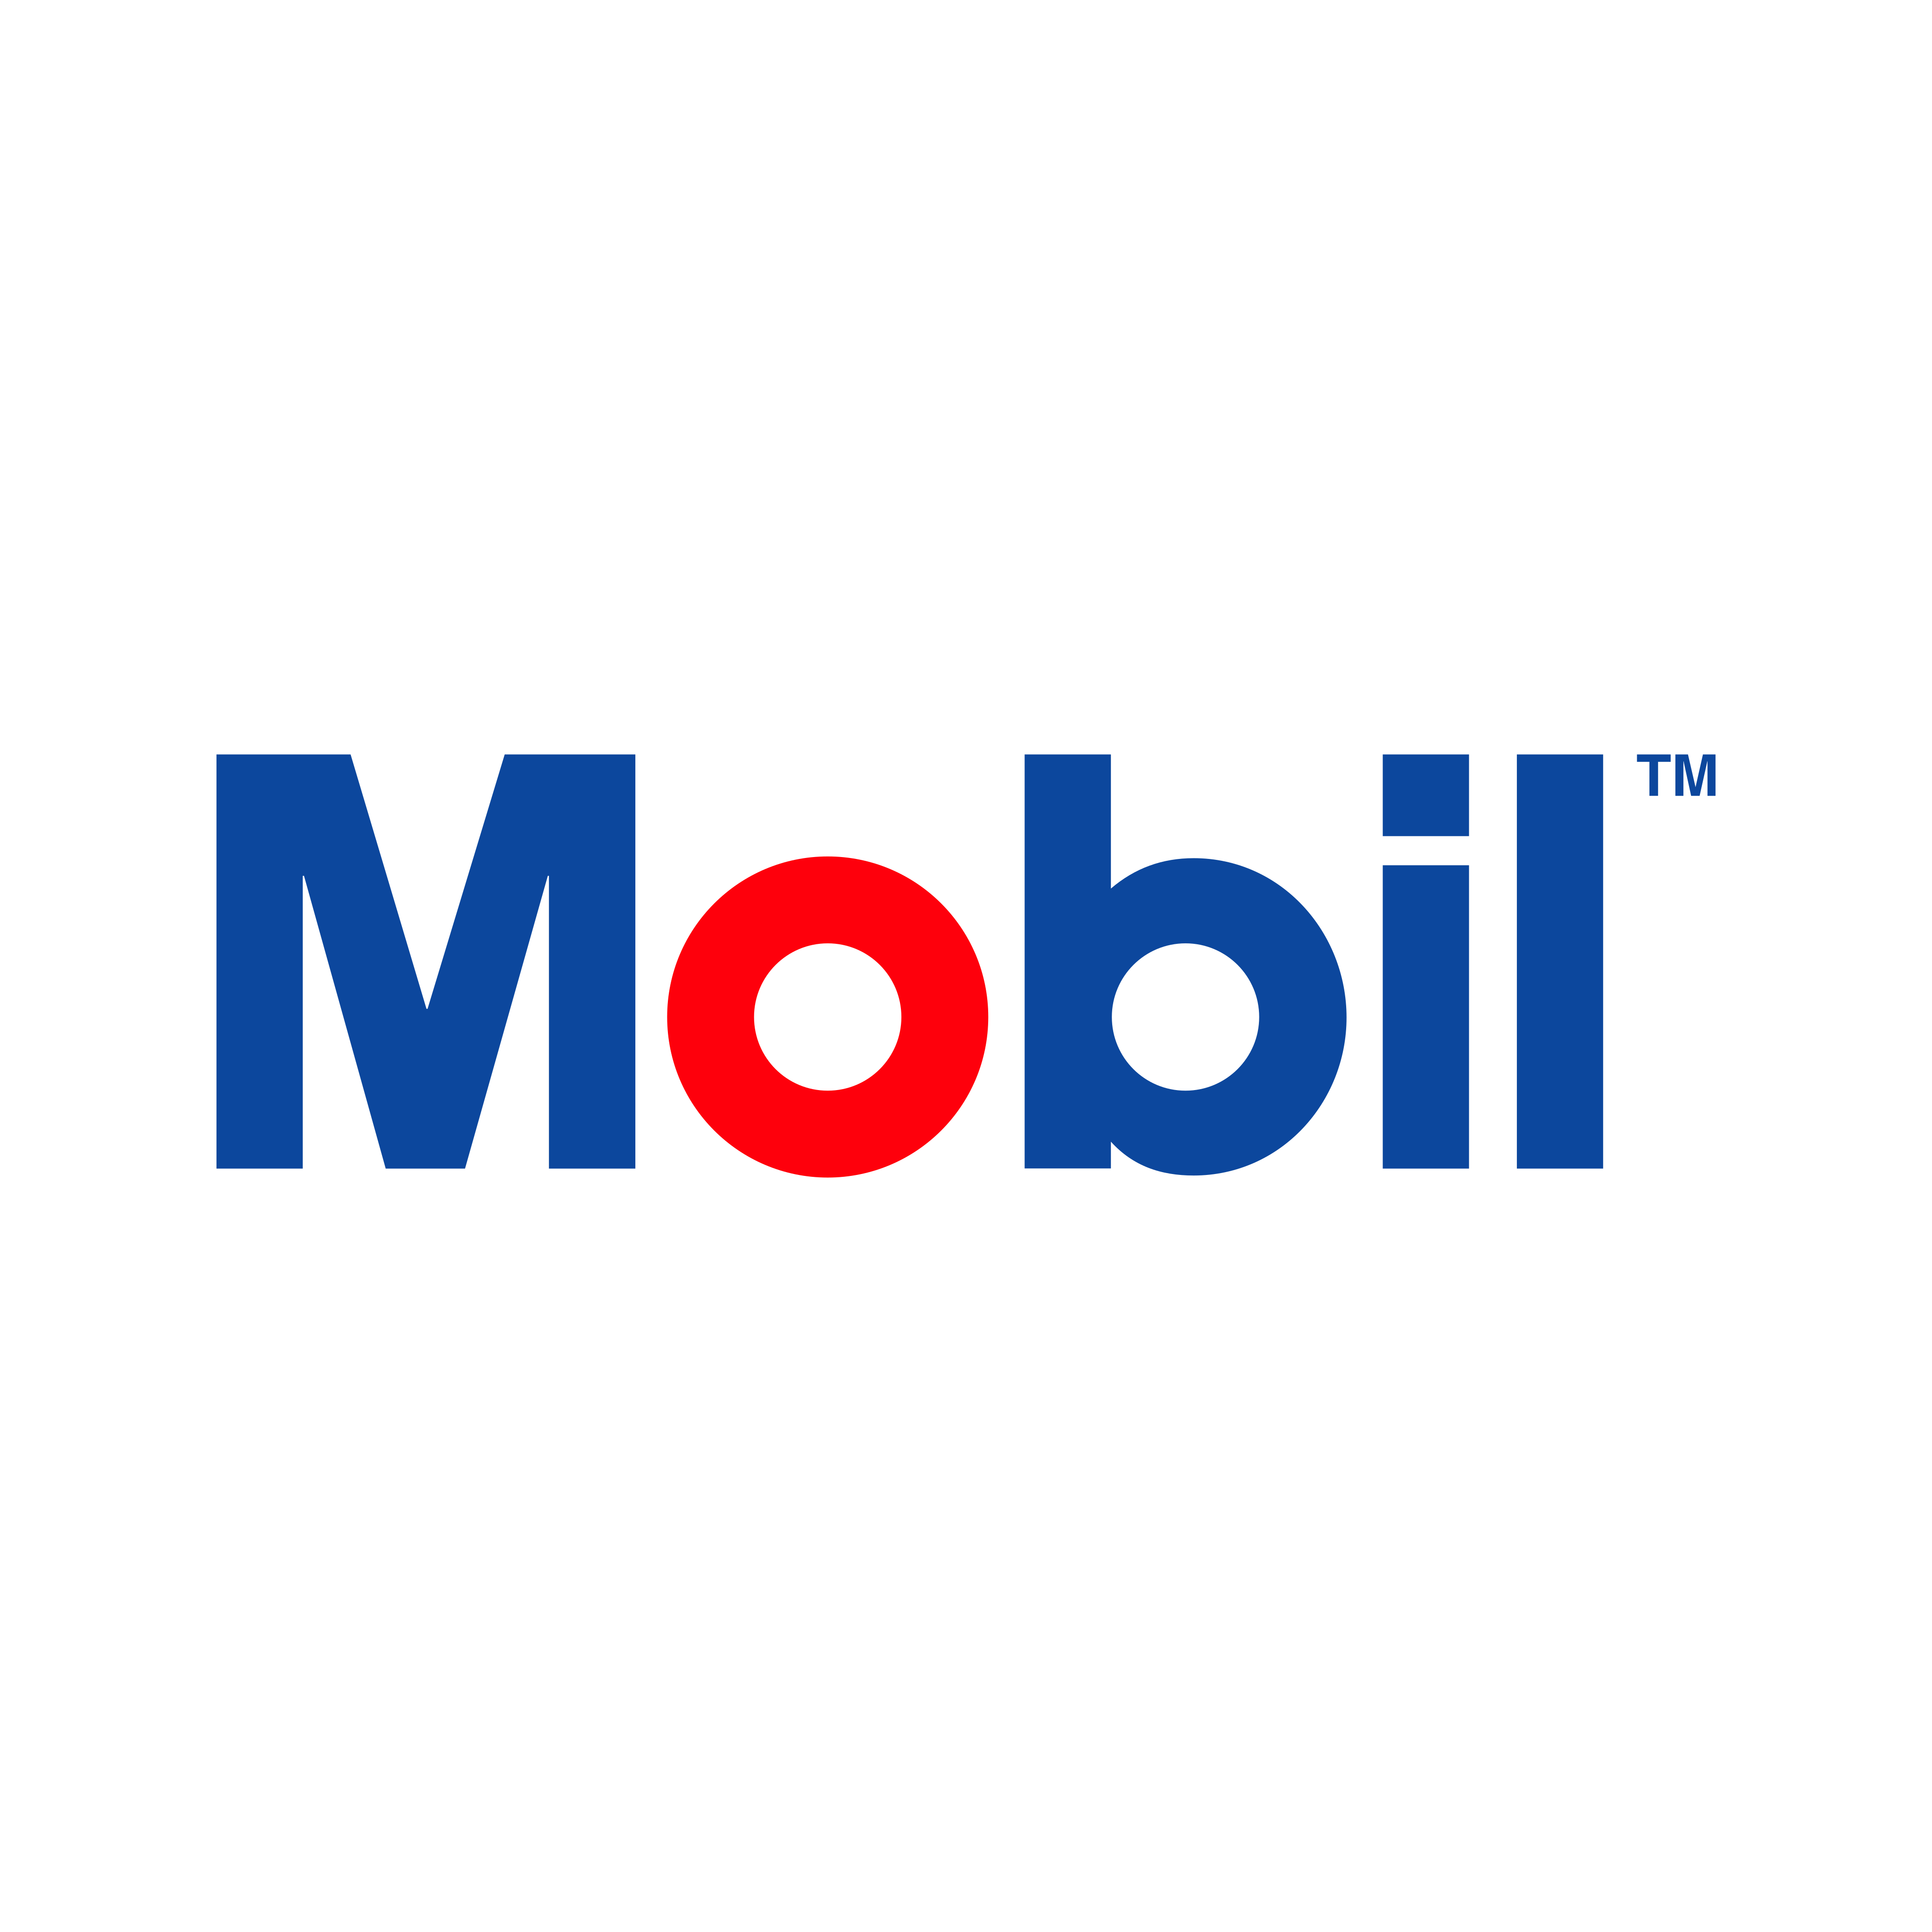 mobil logo 0 - Mobil Logo